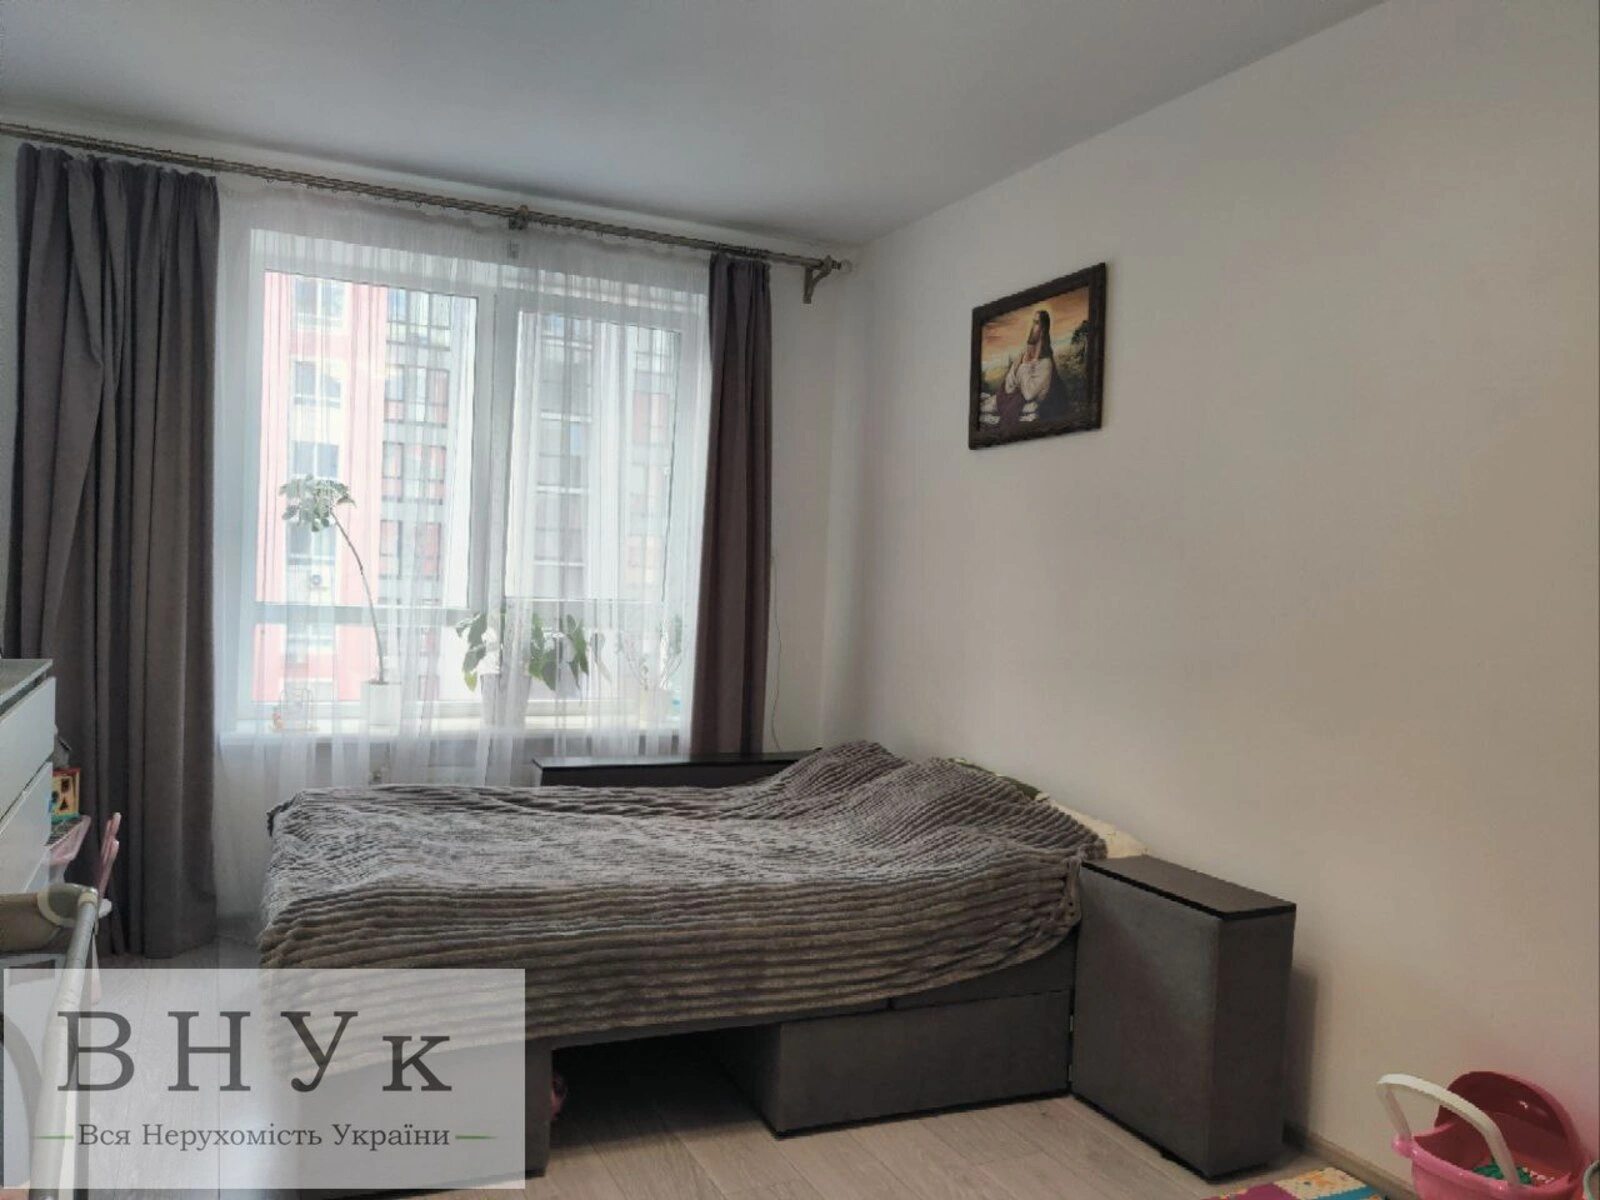 Продам 1-кімнатну квартиру з чудовим ремонтом у новобудові по вулиці Богдана Хмельницького